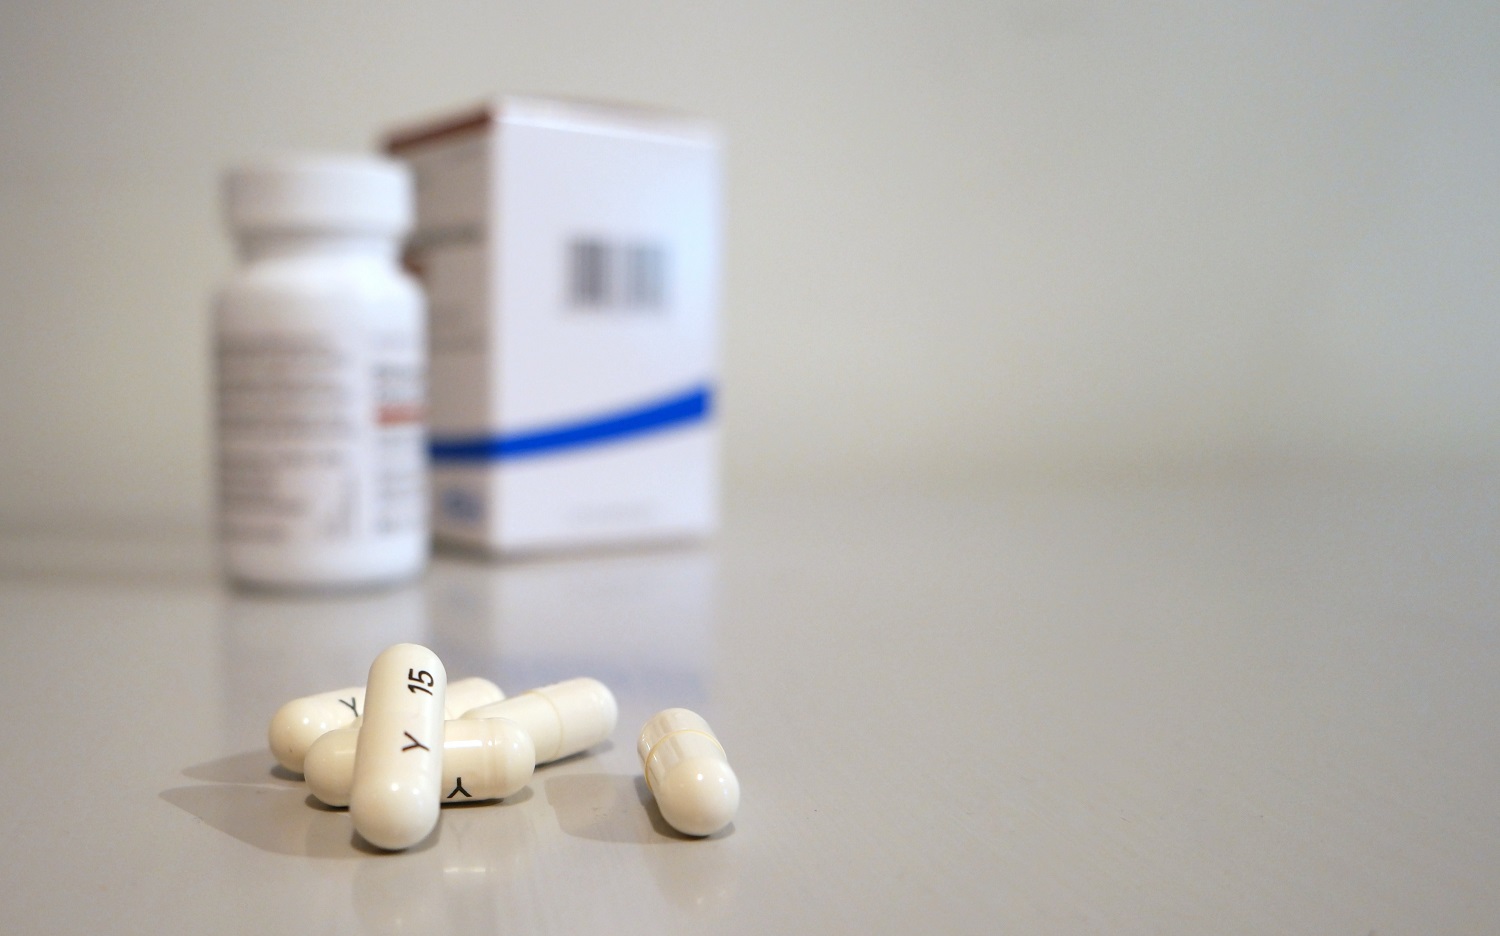 Vaistais prekiaujančioms bendrovėms skirtos baudos už susitarimus dėl kompensuojamų vaistų: turės sumokėti daugiau kaip 72 mln. eurų